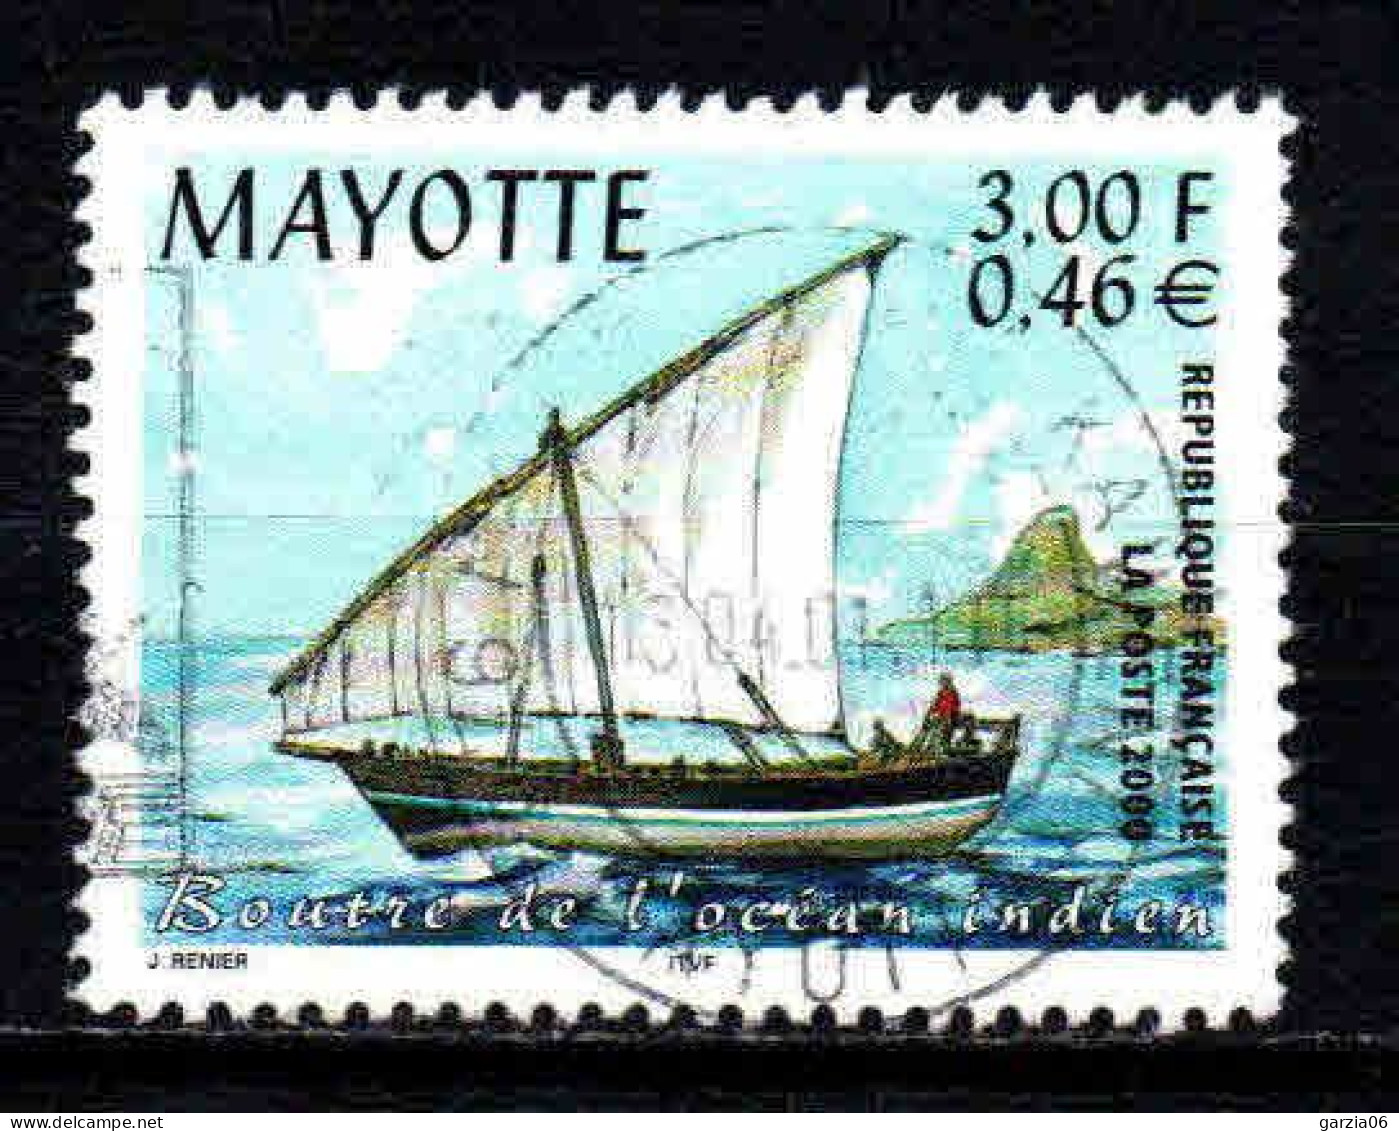 Mayotte - 2000  - Préfecture  - N° 81  -  Oblitéré - Used - Oblitérés